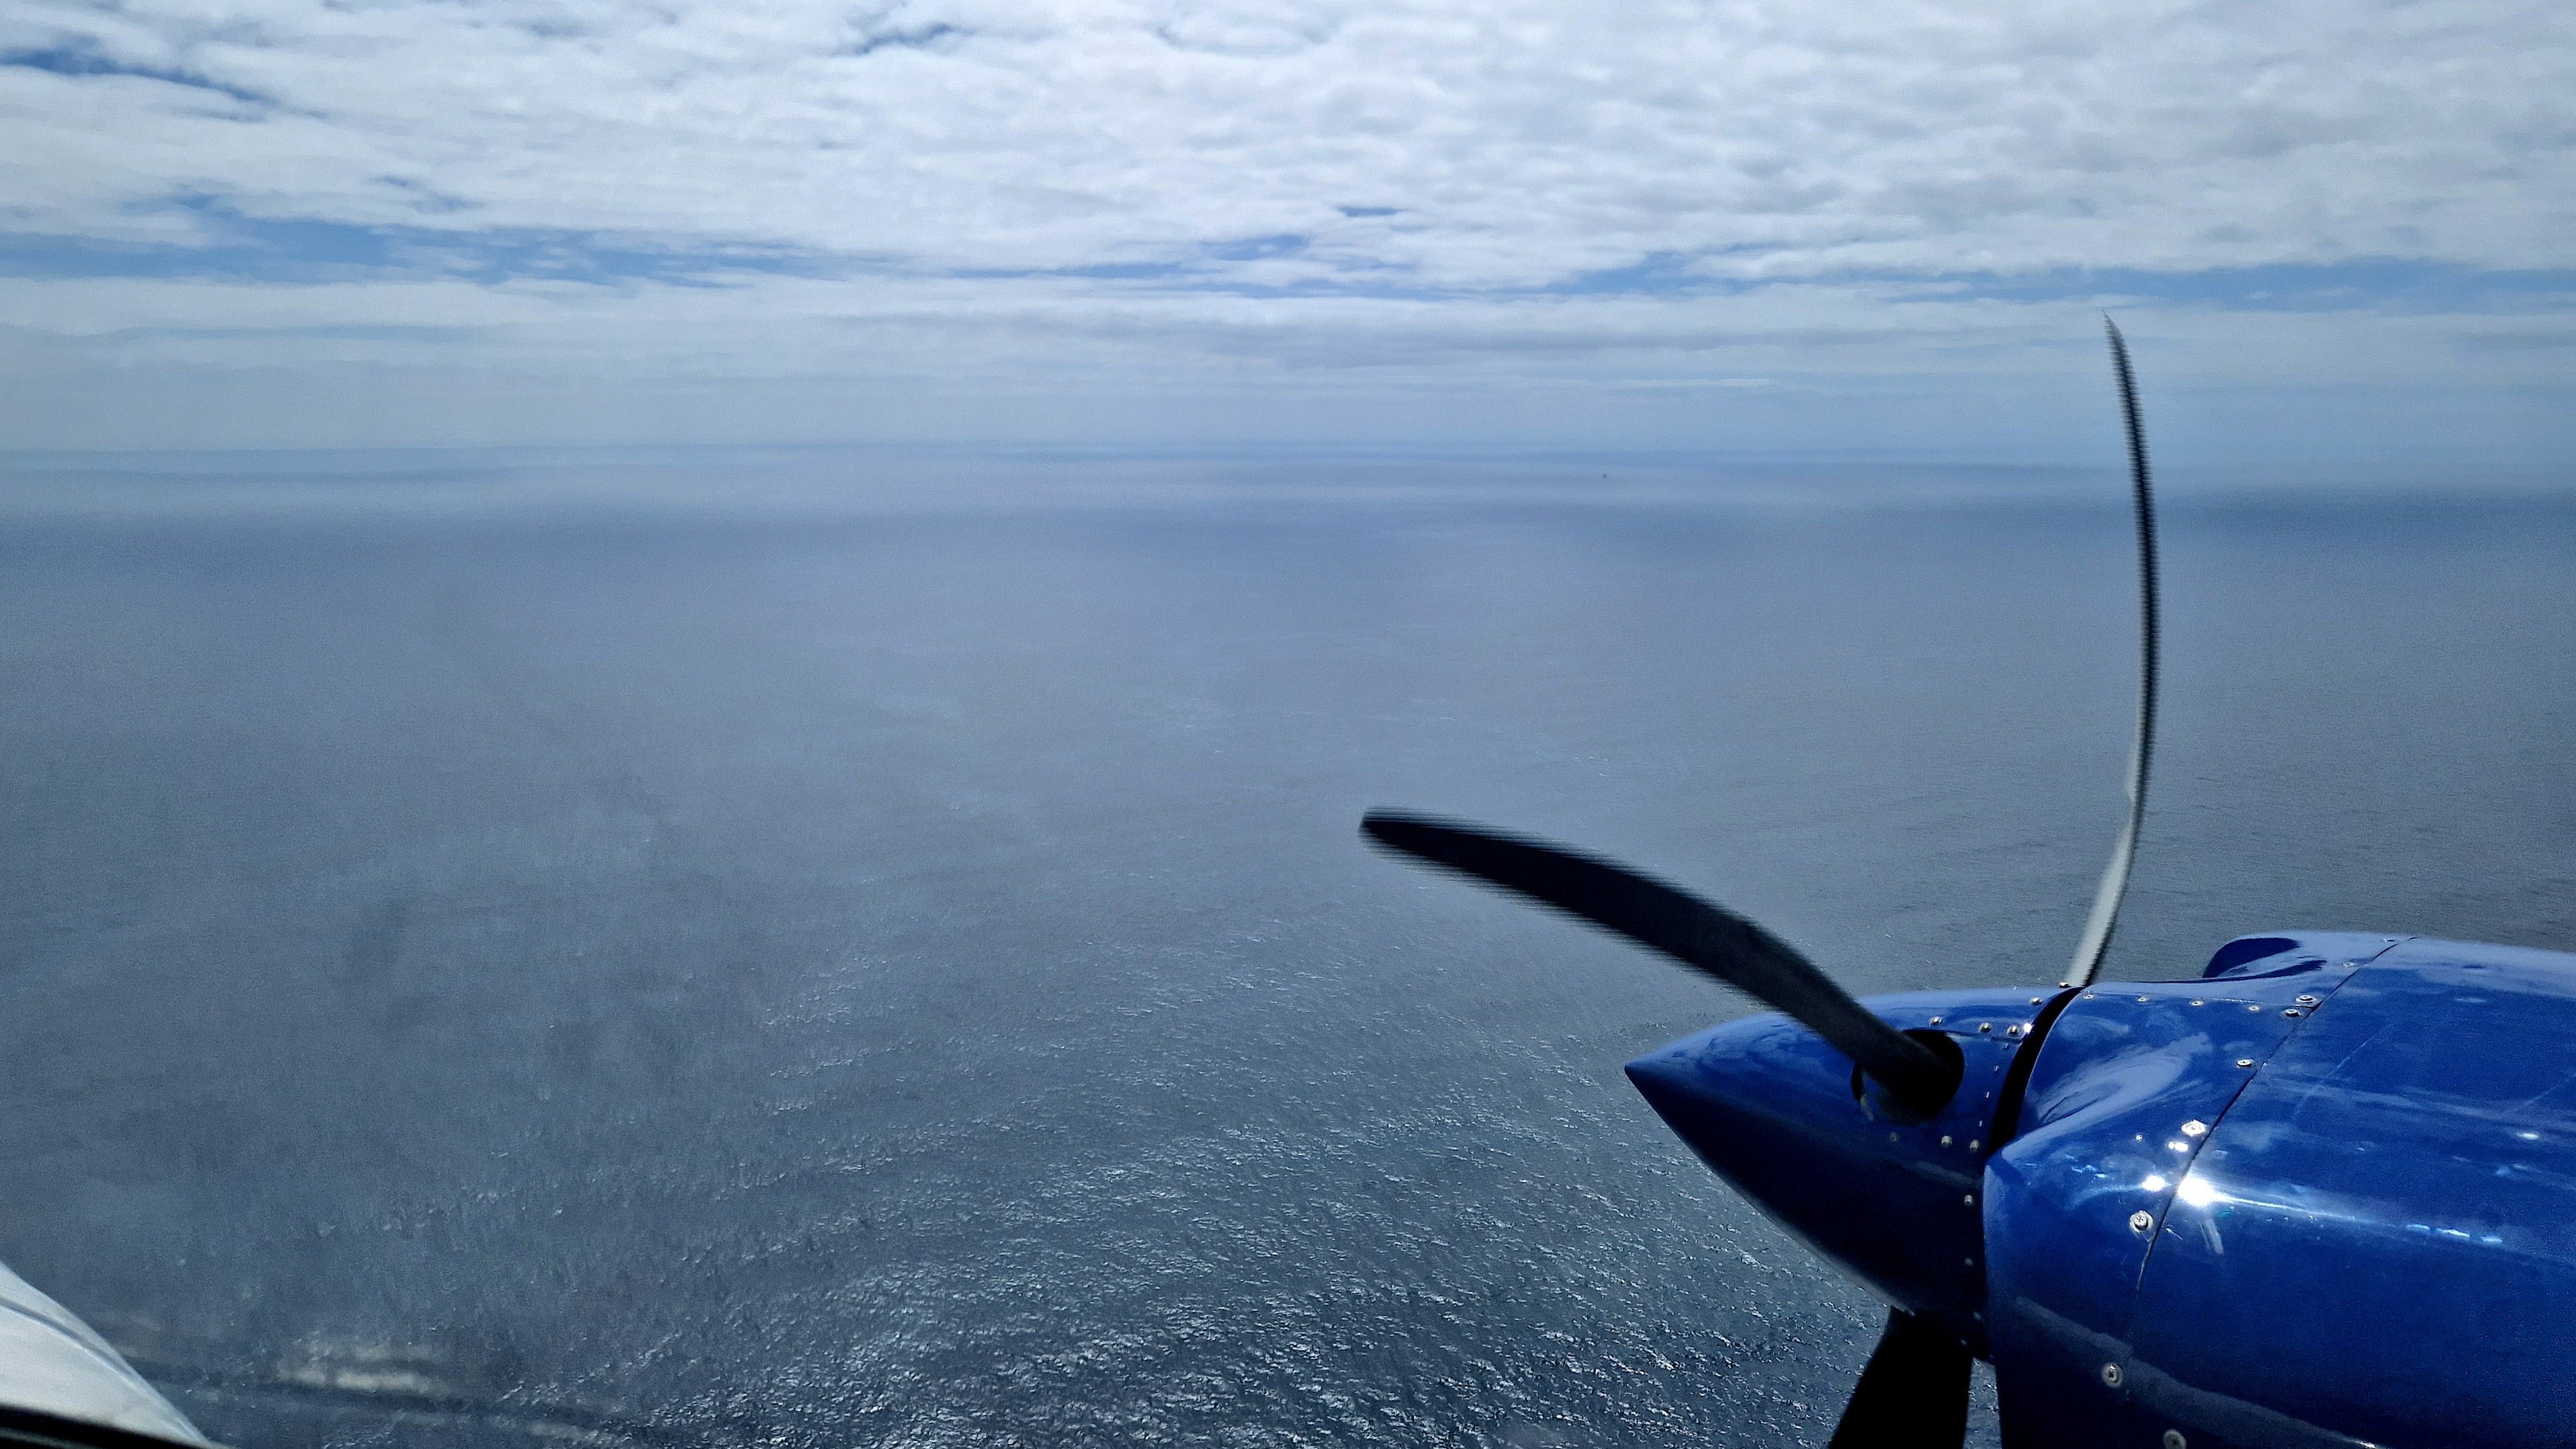 Blick aus einem Flugzeugfenster auf das Meer, vorne rechts im Bild der Propeller des Flugzeugs.